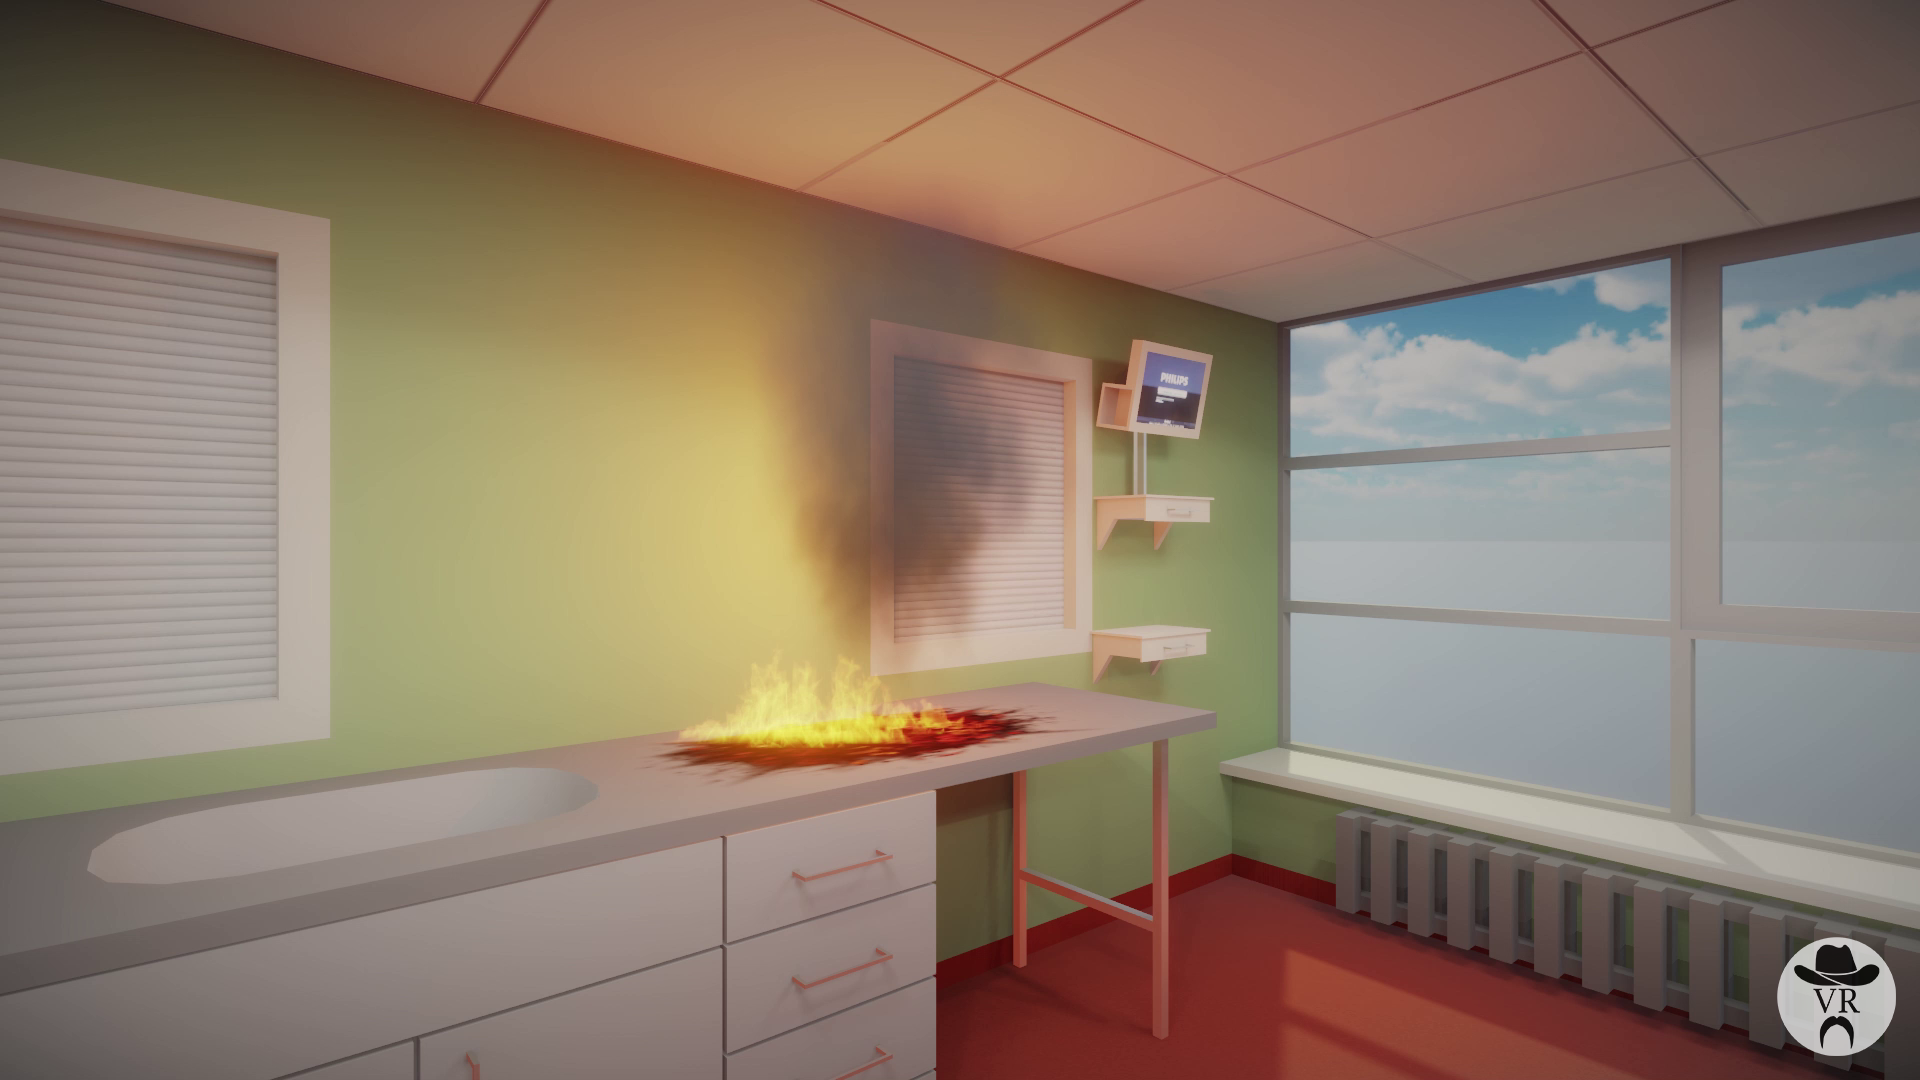 CHL formation évacuation incendie en réalité virtuelle